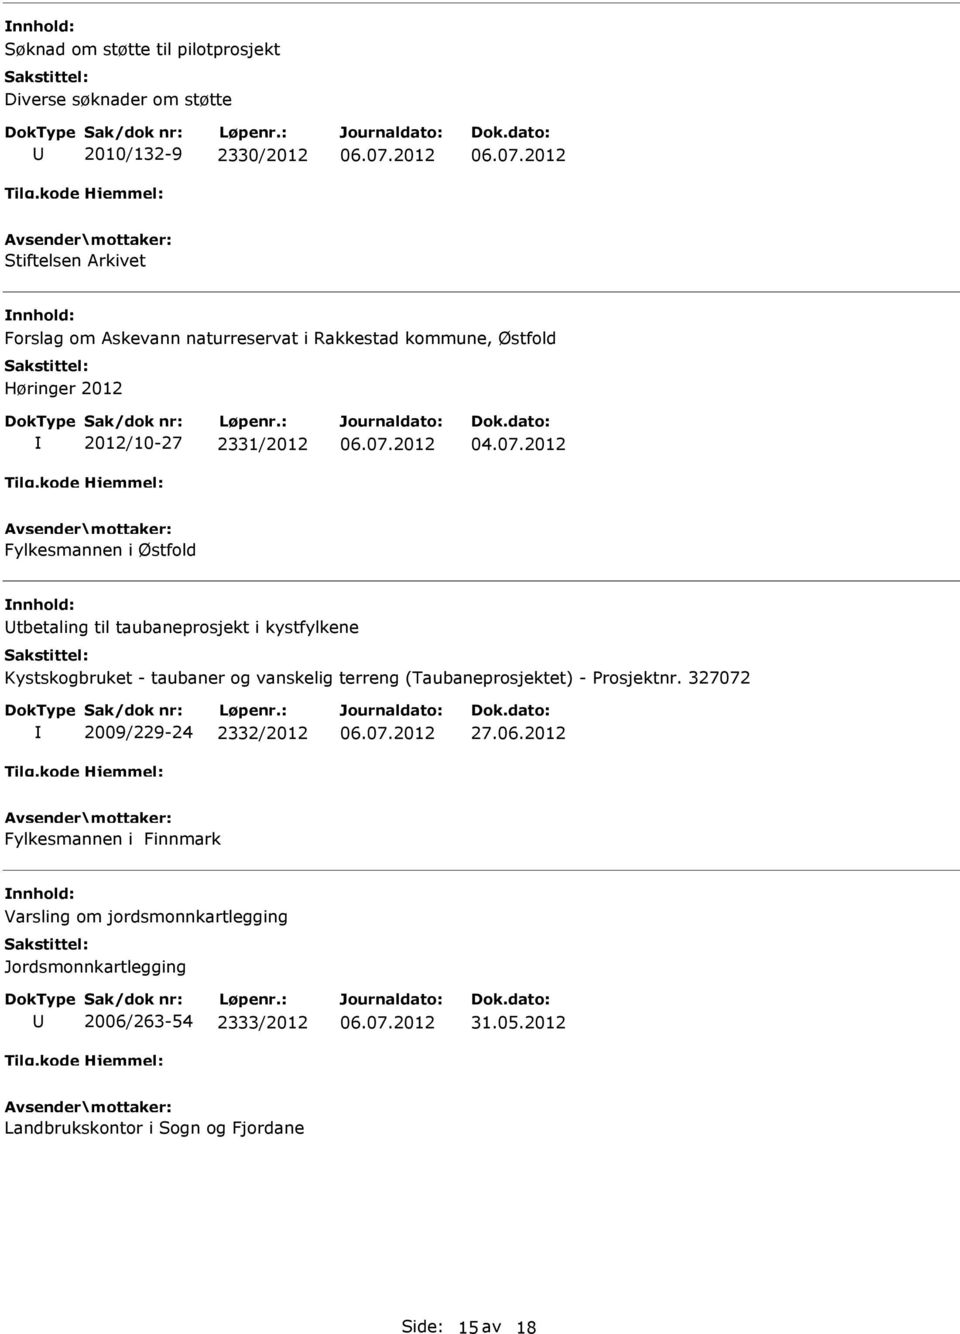 Kystskogbruket - taubaner og vanskelig terreng (Taubaneprosjektet) - Prosjektnr. 327072 2009/229-24 2332/2012 27.06.